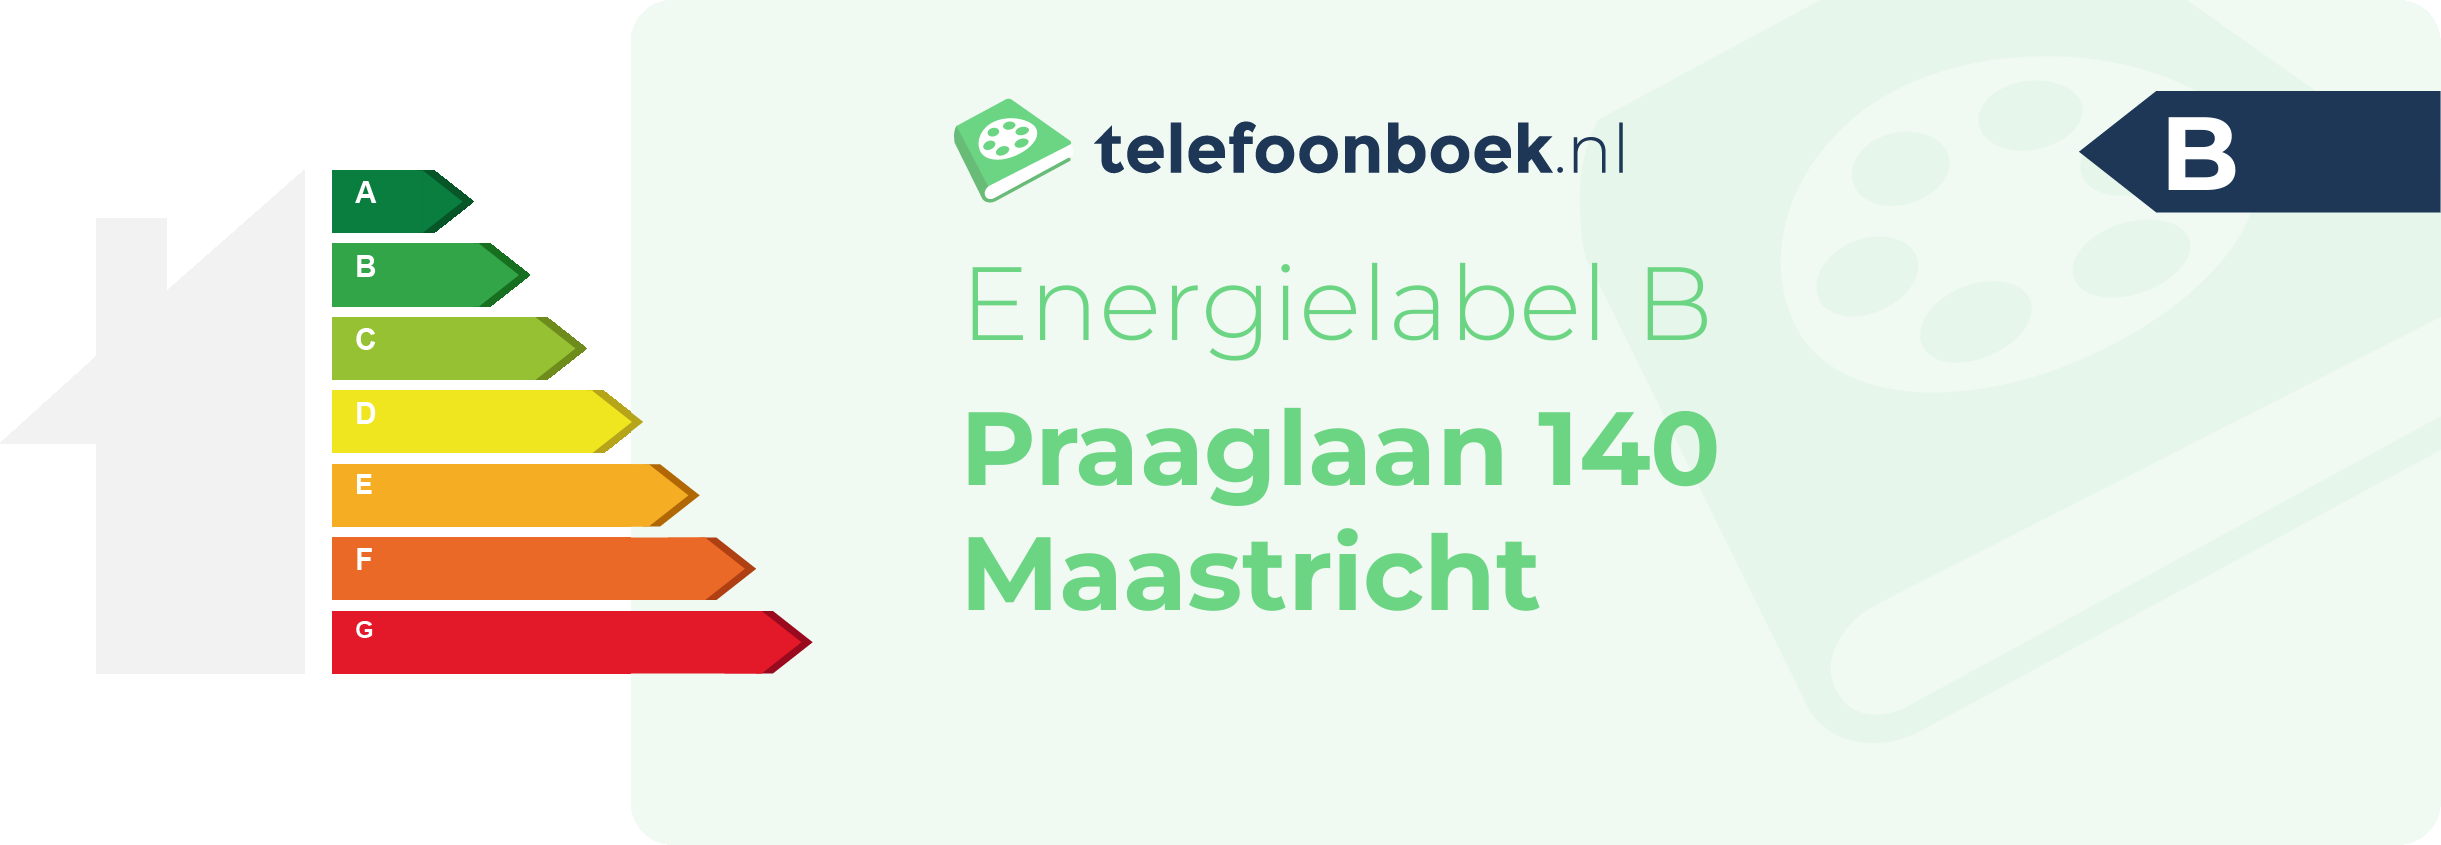 Energielabel Praaglaan 140 Maastricht